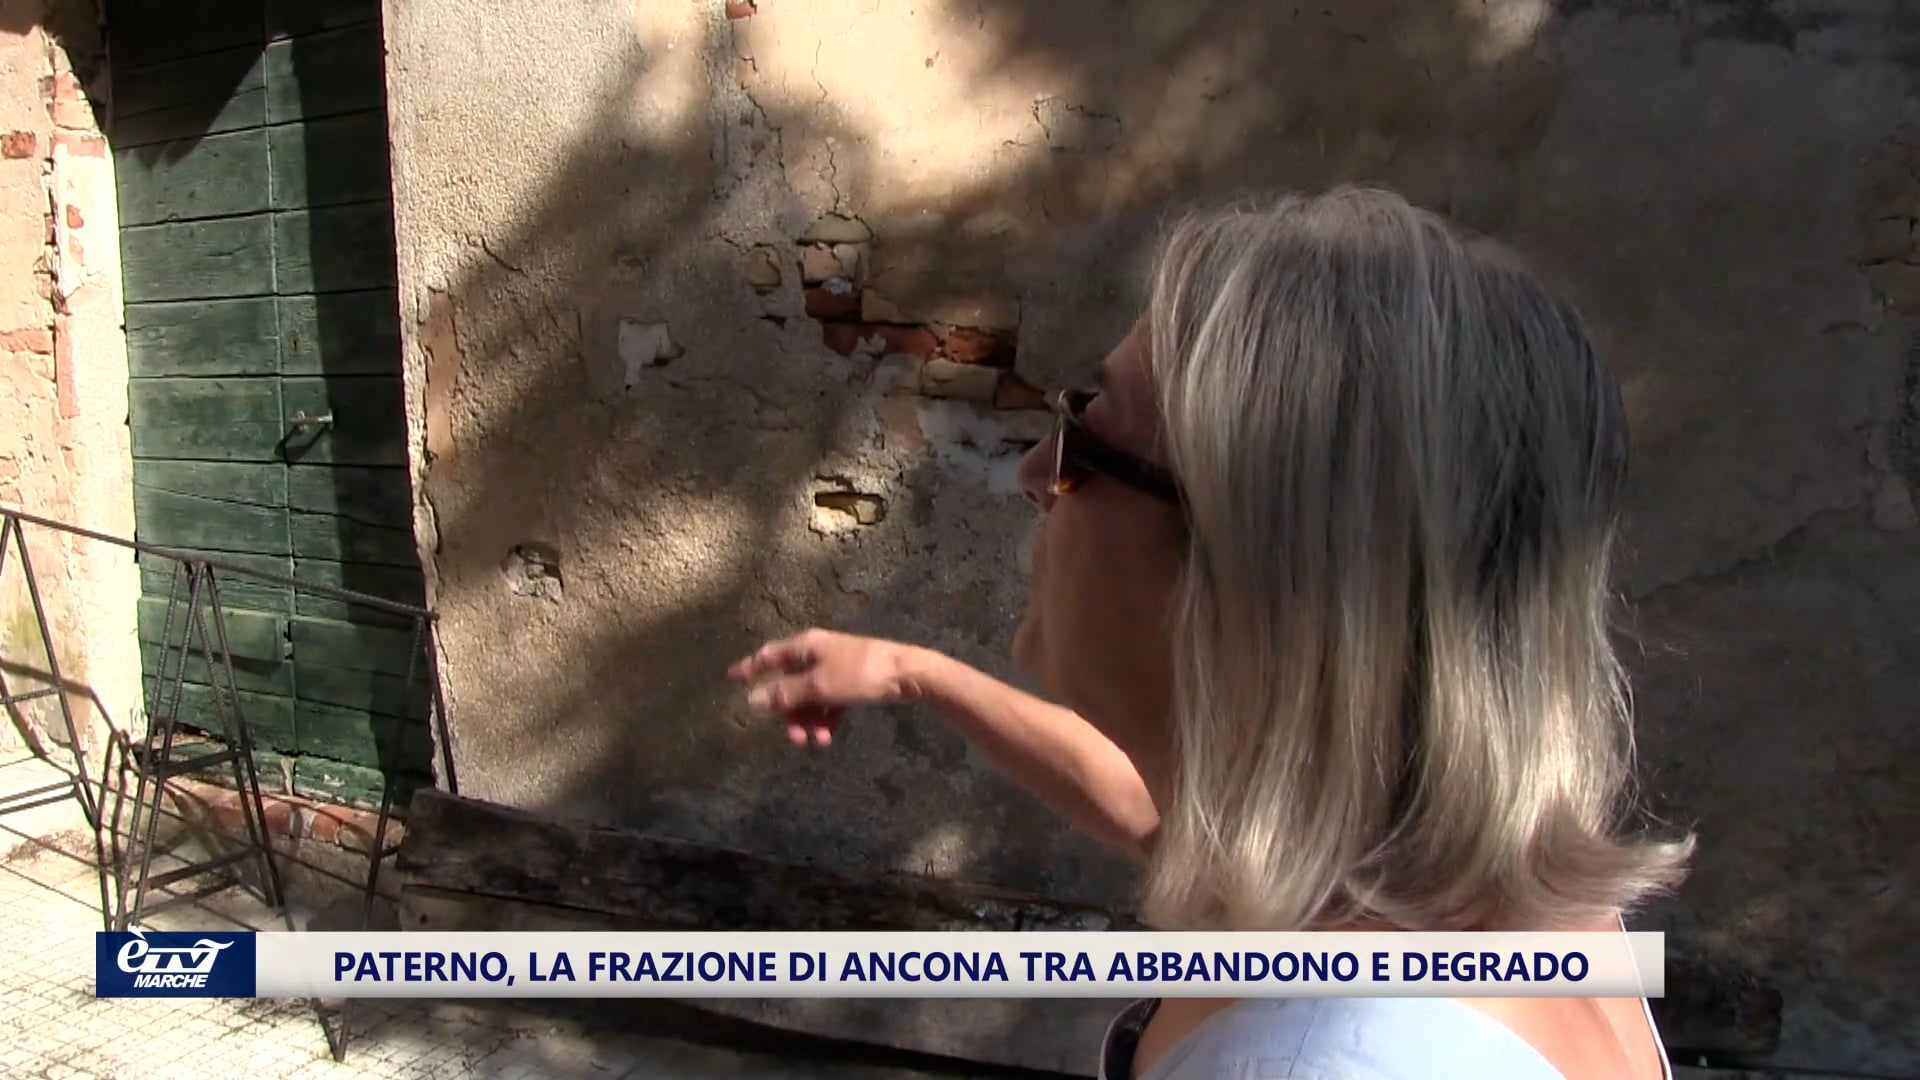 Paterno, la frazione di Ancona tra abbandono e degrado